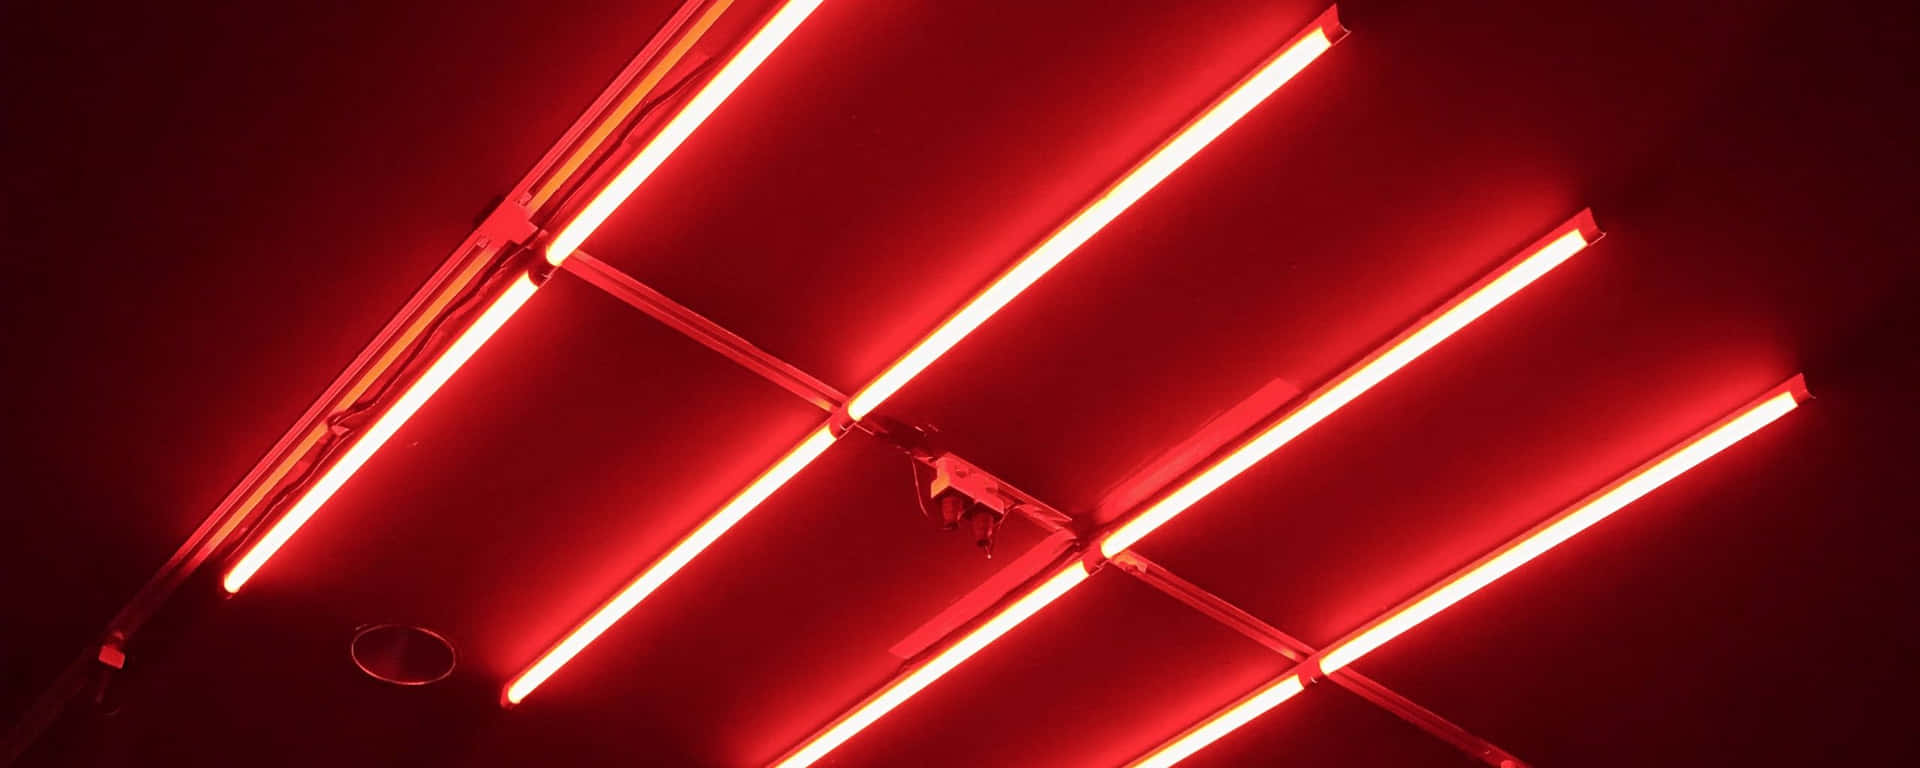 Luzfluorescente Roja Ultra Wide Hd Fondo de pantalla